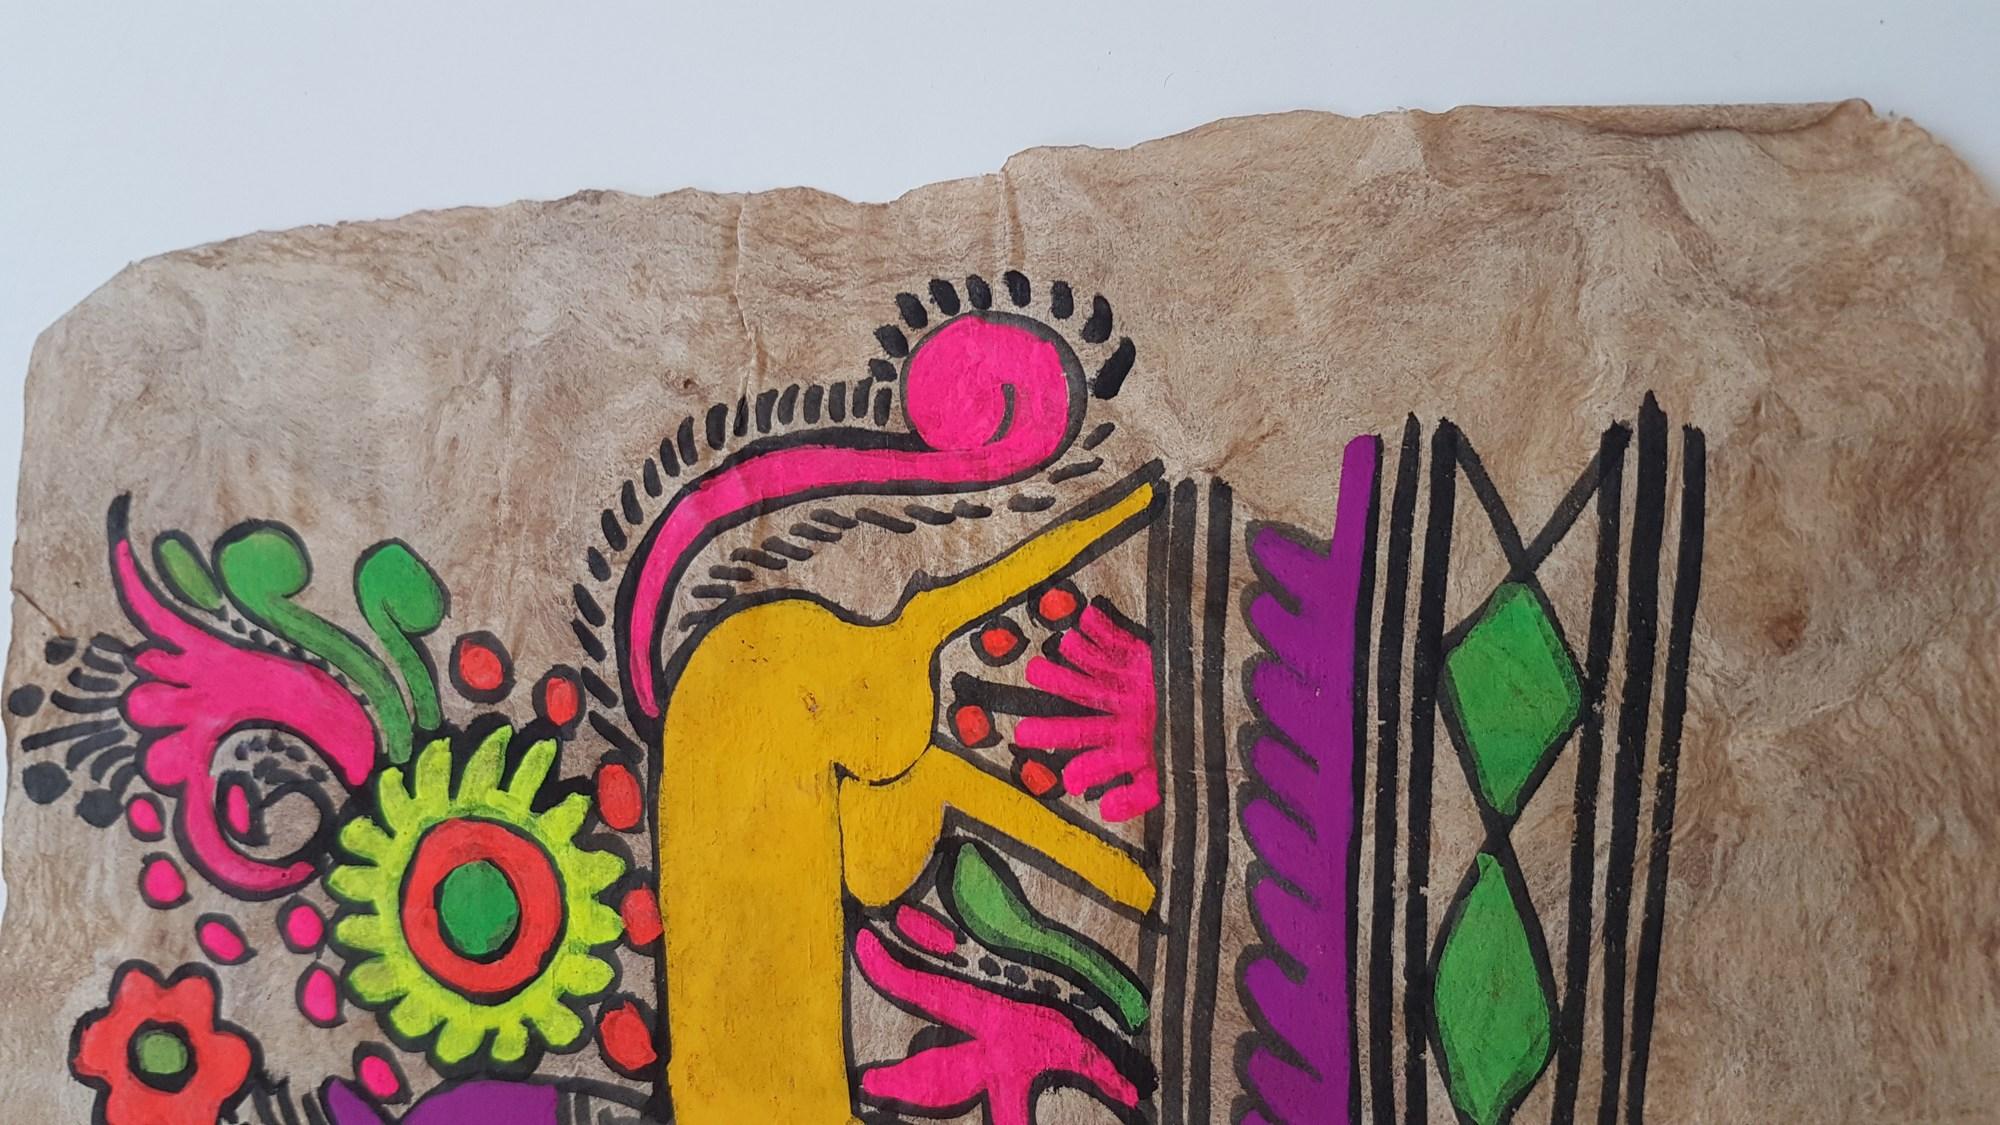 Unbekannter indischer bildender Künstler
Titel: Fabelwesen
Gouache
Auflage: Einzigartig
Größe: 10,5 × 14,4 Zoll